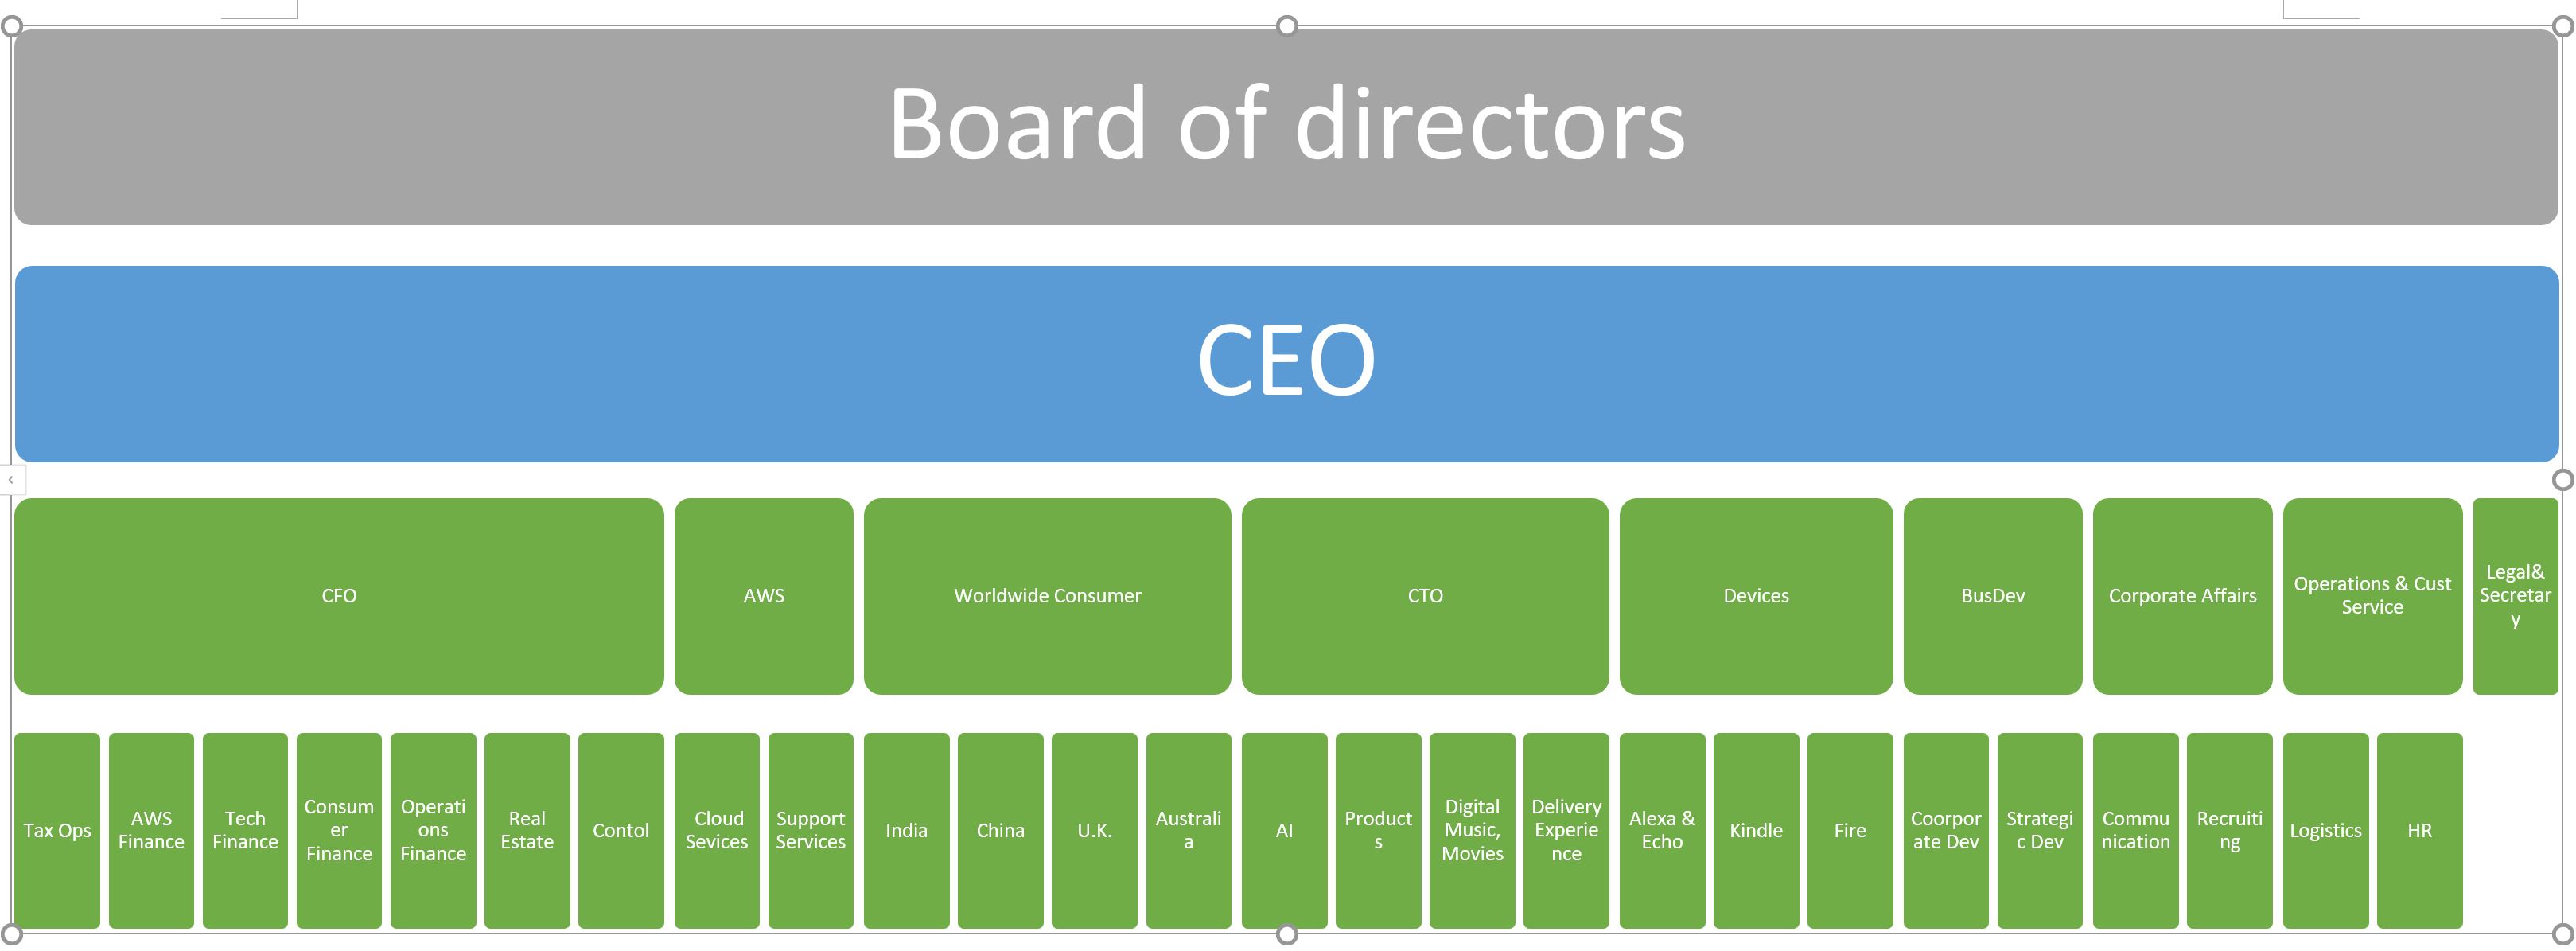 Amazon Corporate Organization Chart